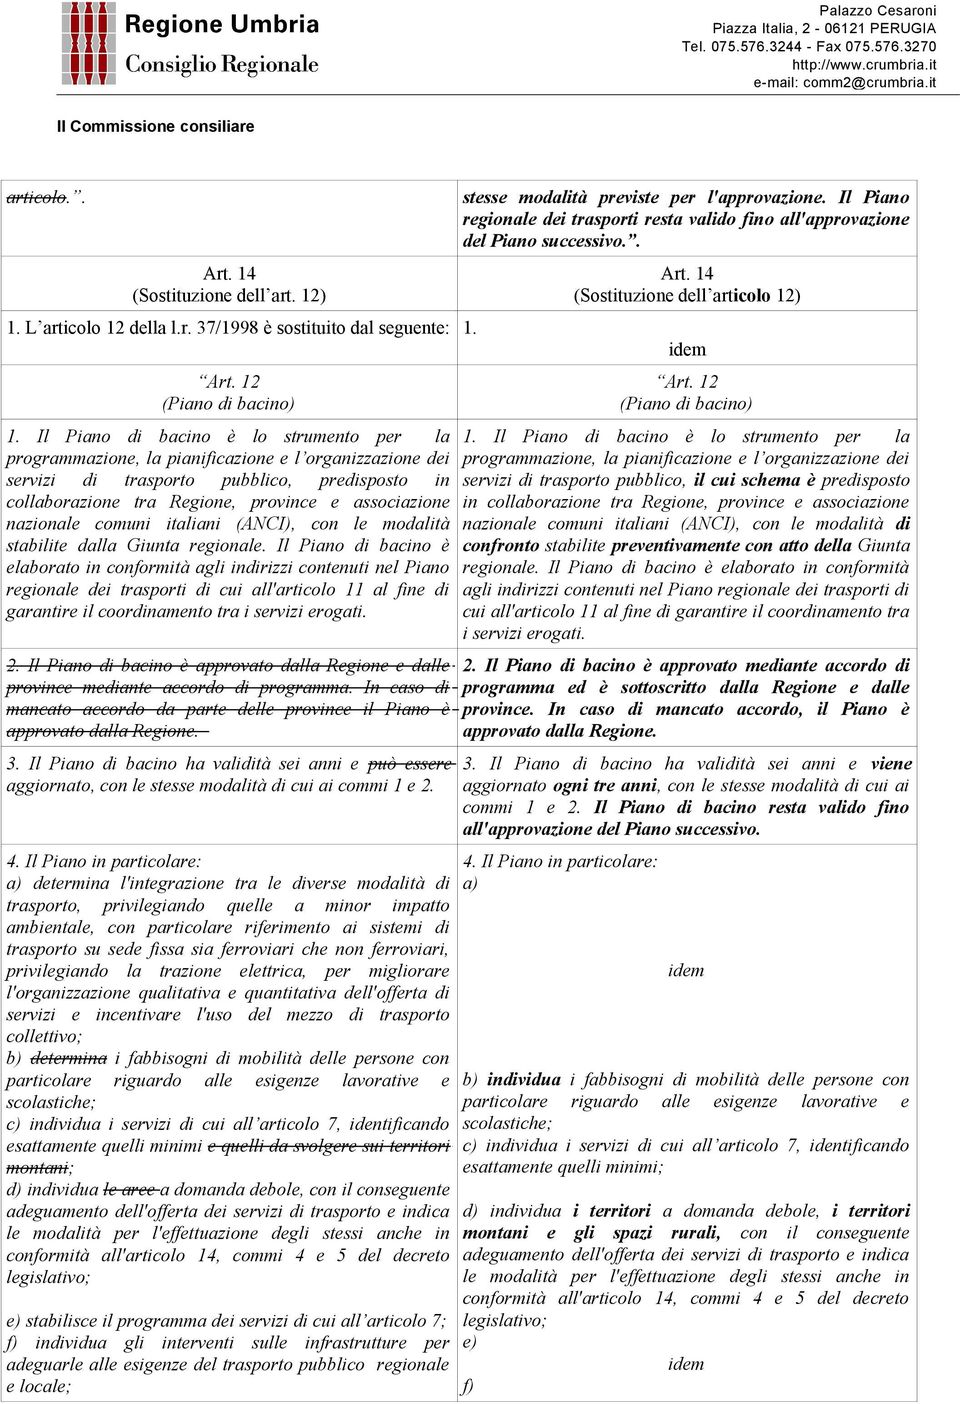 province e associazione nazionale comuni italiani (ANCI), con le modalità stabilite dalla Giunta regionale.